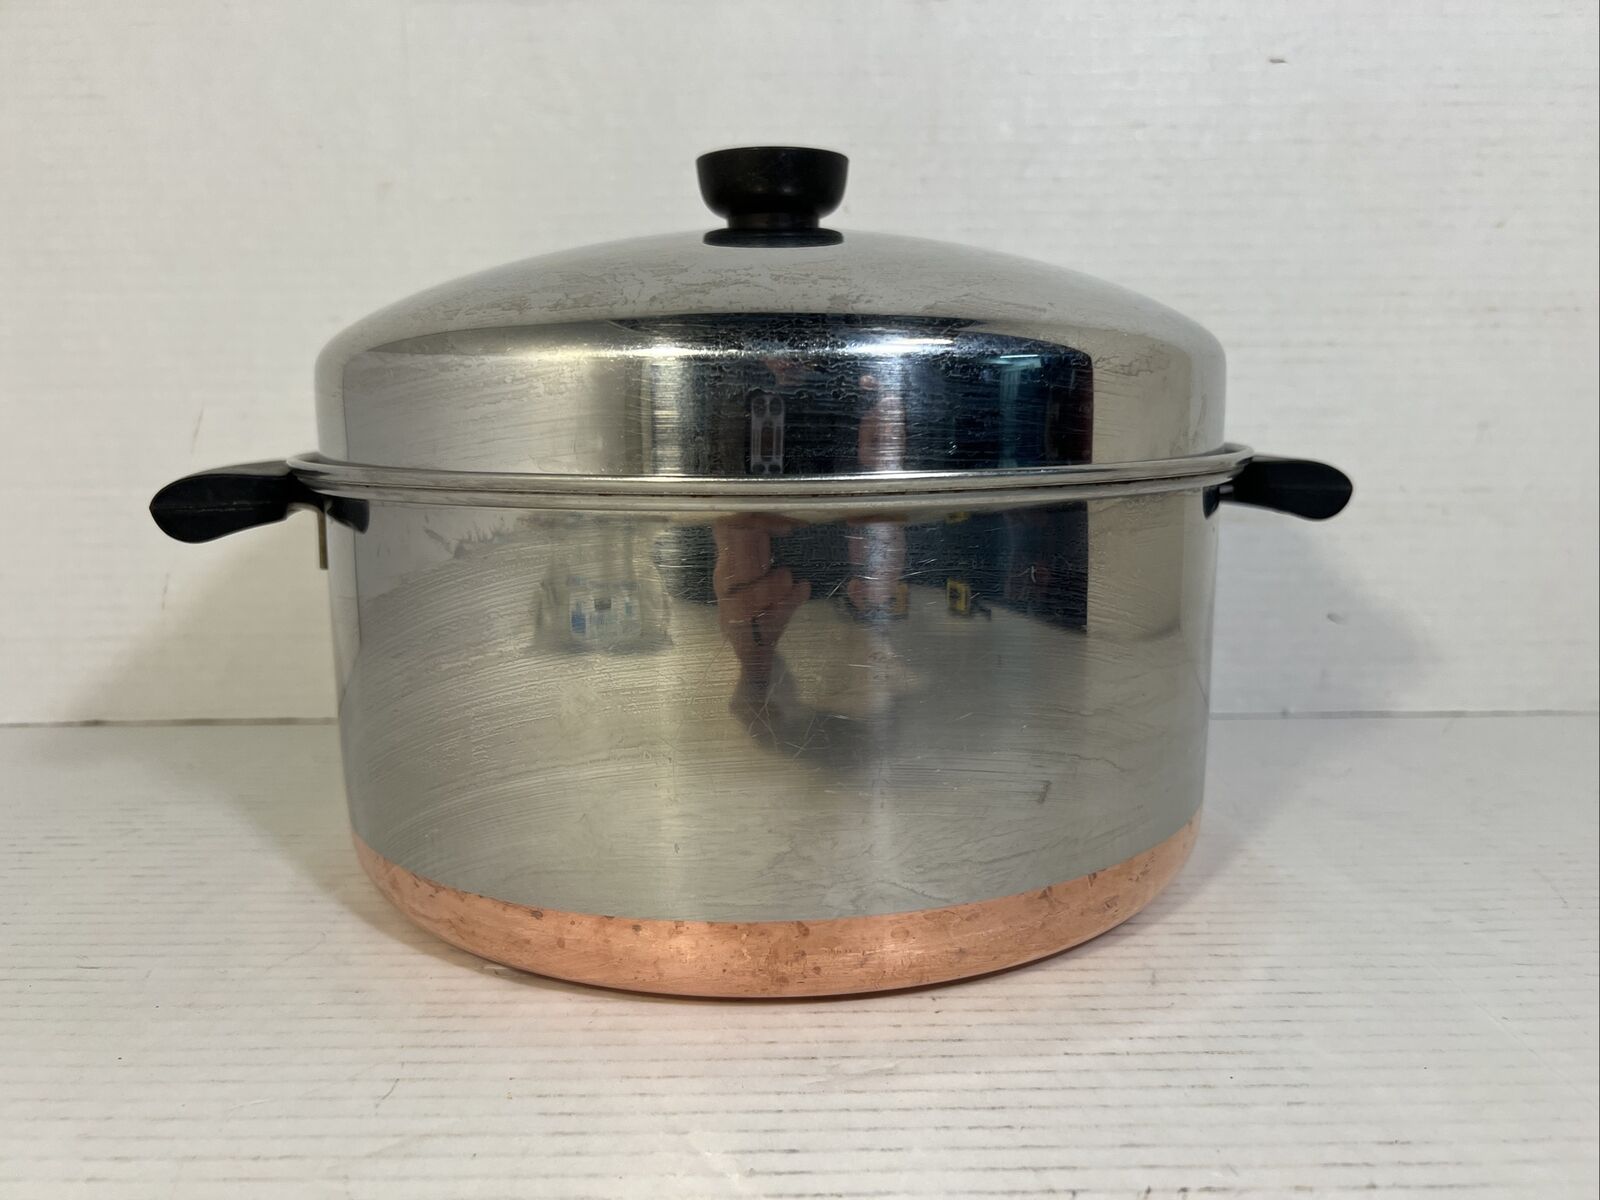 RARE 1947 Revere Ware 6-Quart Dutch Oven w/Dome Lid, Rare Mark, EUC